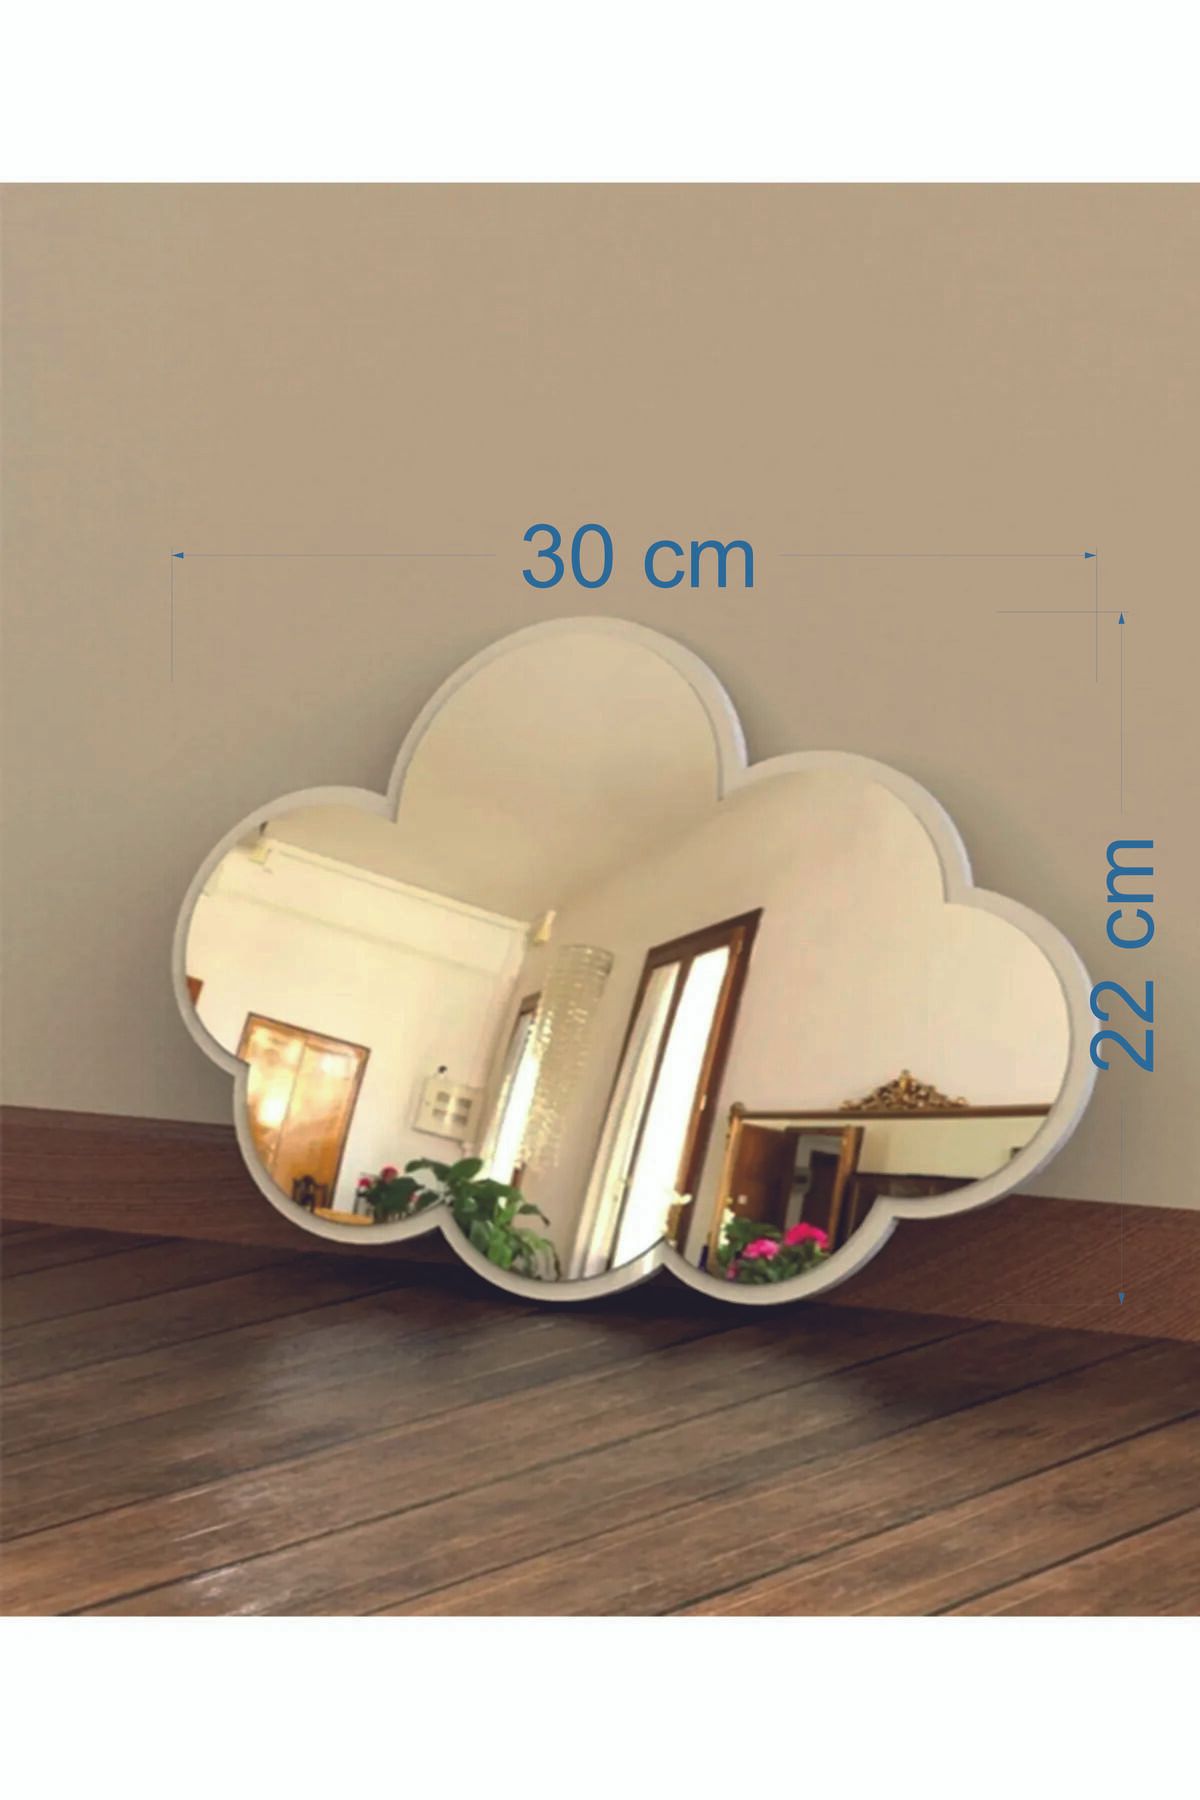 hediyesepetin Çocuk Odası Ayna-bulut Pleksi Dekoratif Ayna 1 Adet